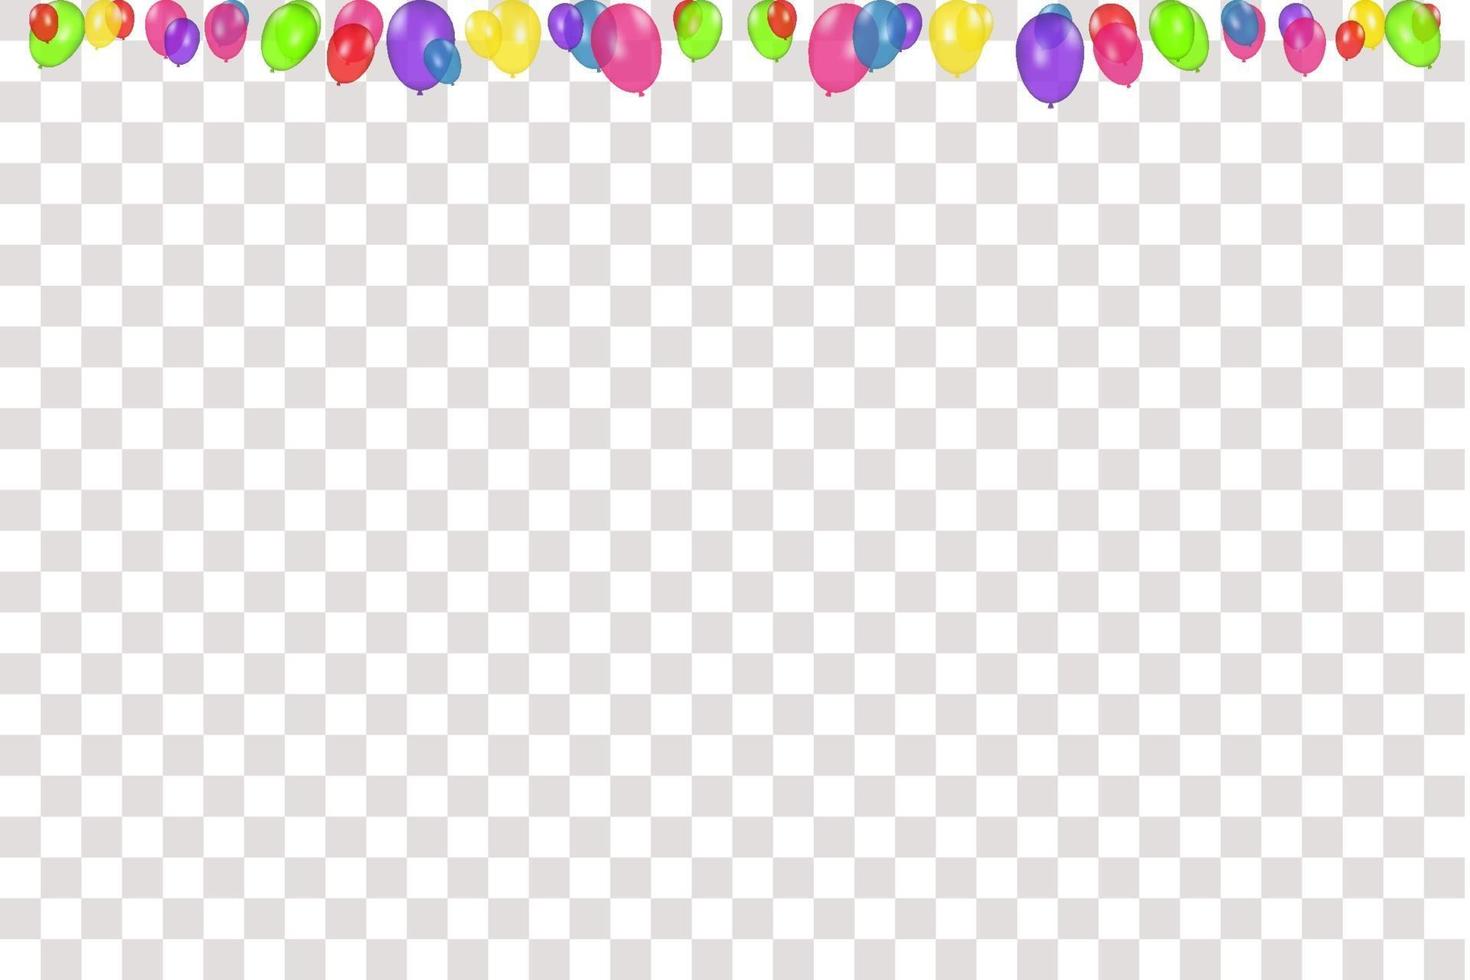 composição de cores de balões realistas de vetor isolados. balões isolados. para cartões de aniversário ou outros designs